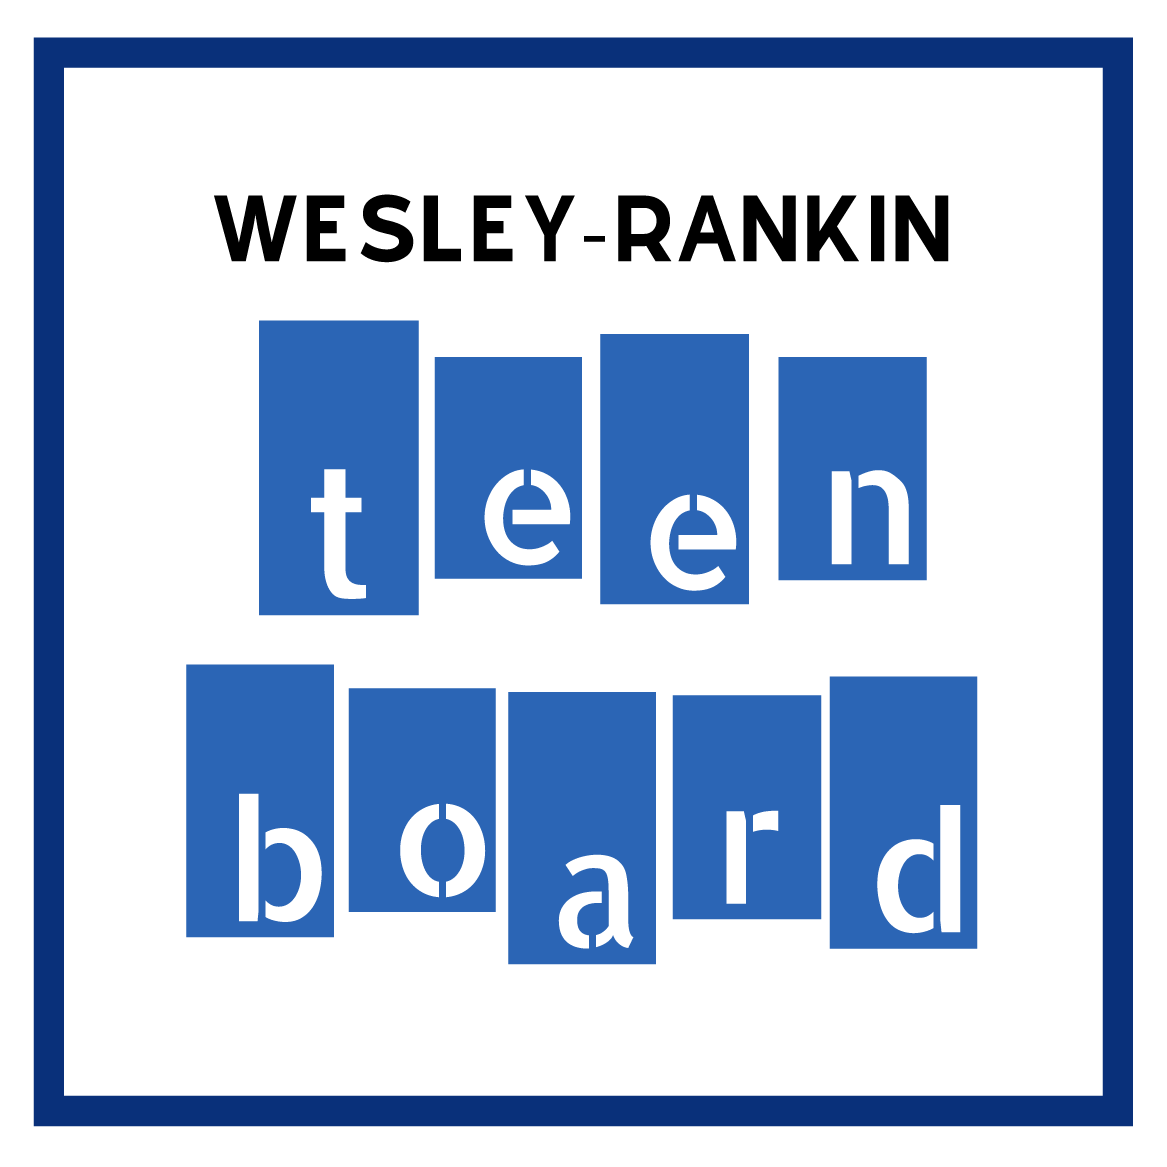 Teen Board WesleyRankin